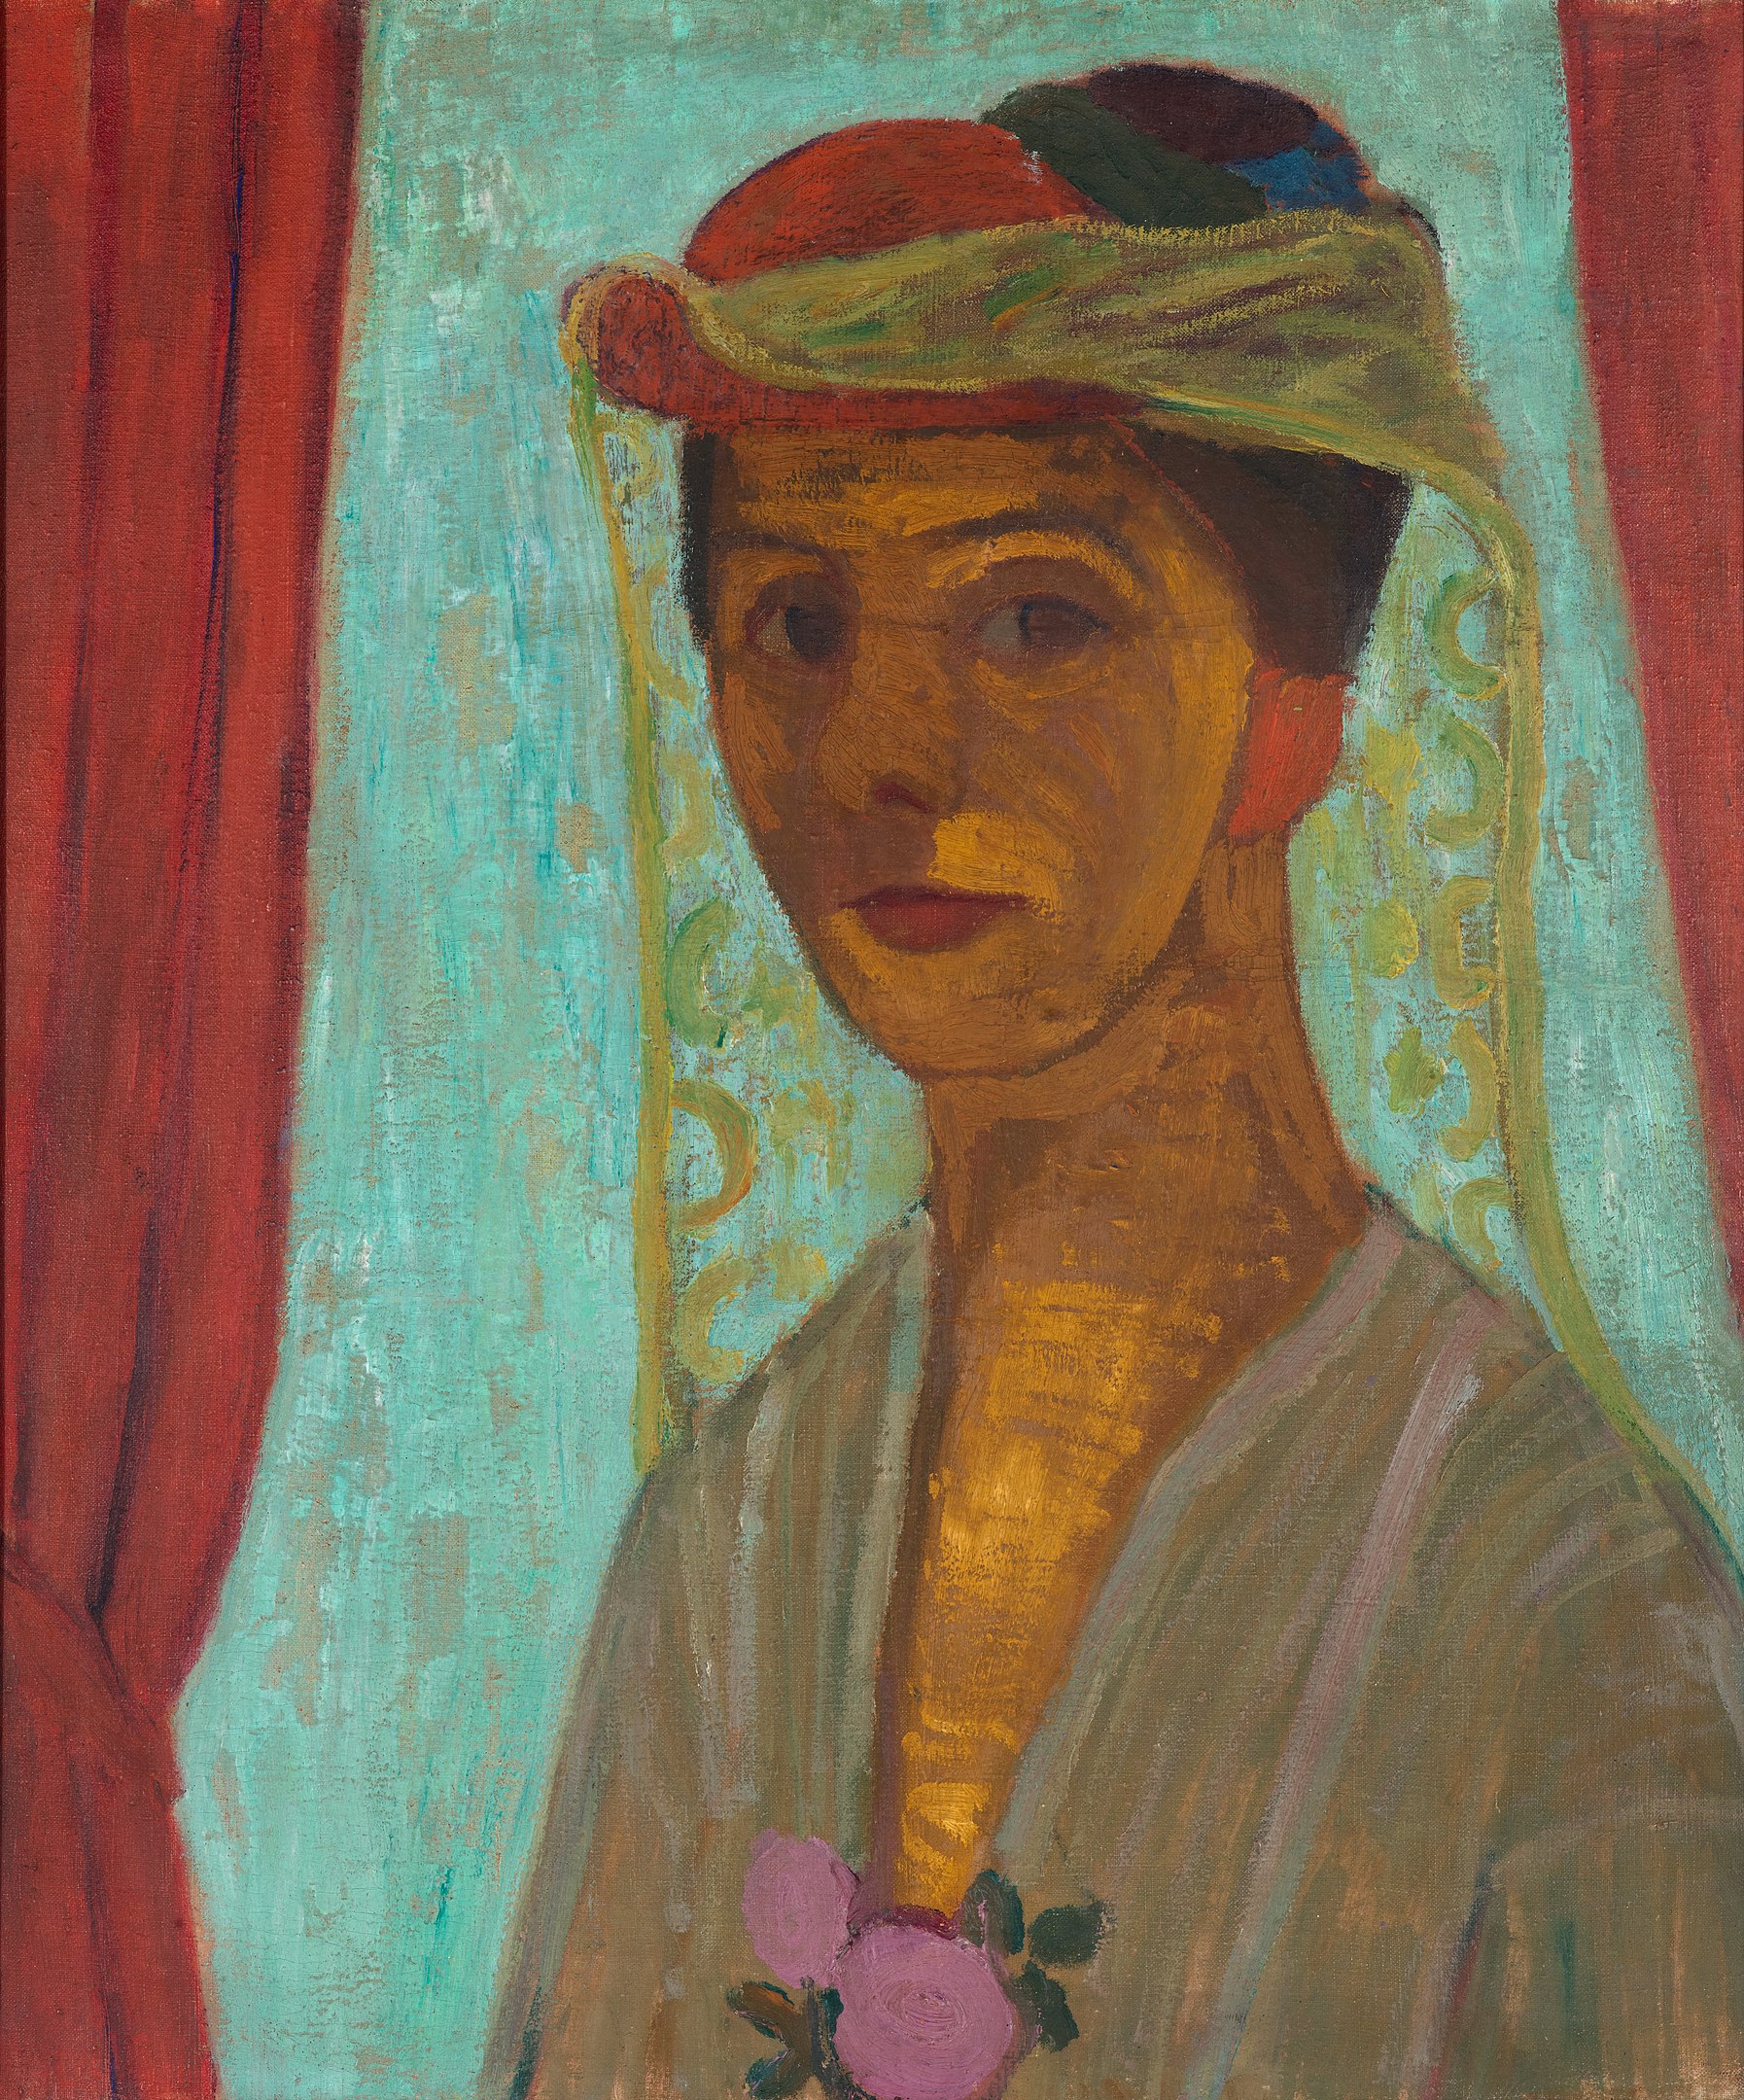 لوحة ذاتية مع قبعة وخمار by Paula Modersohn-Becker - 1906/1907 - الأبعاد: 89.6 × 79.8 سم 